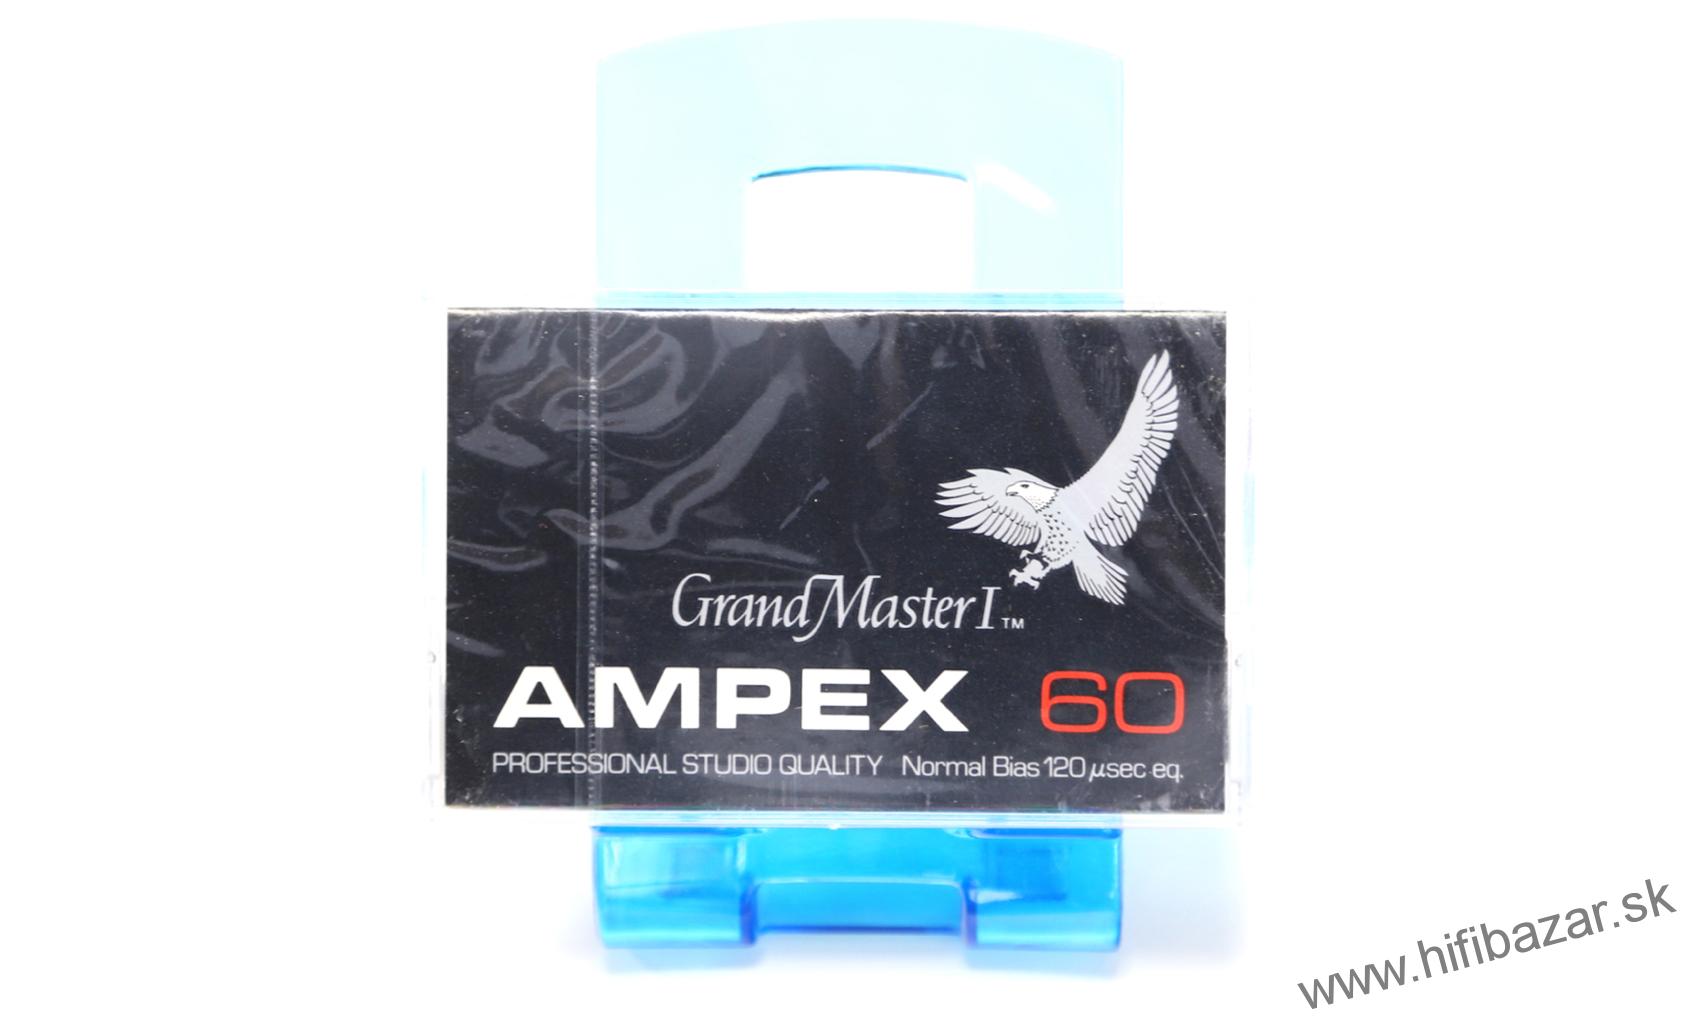 AMPEX C-60 Grand Master I